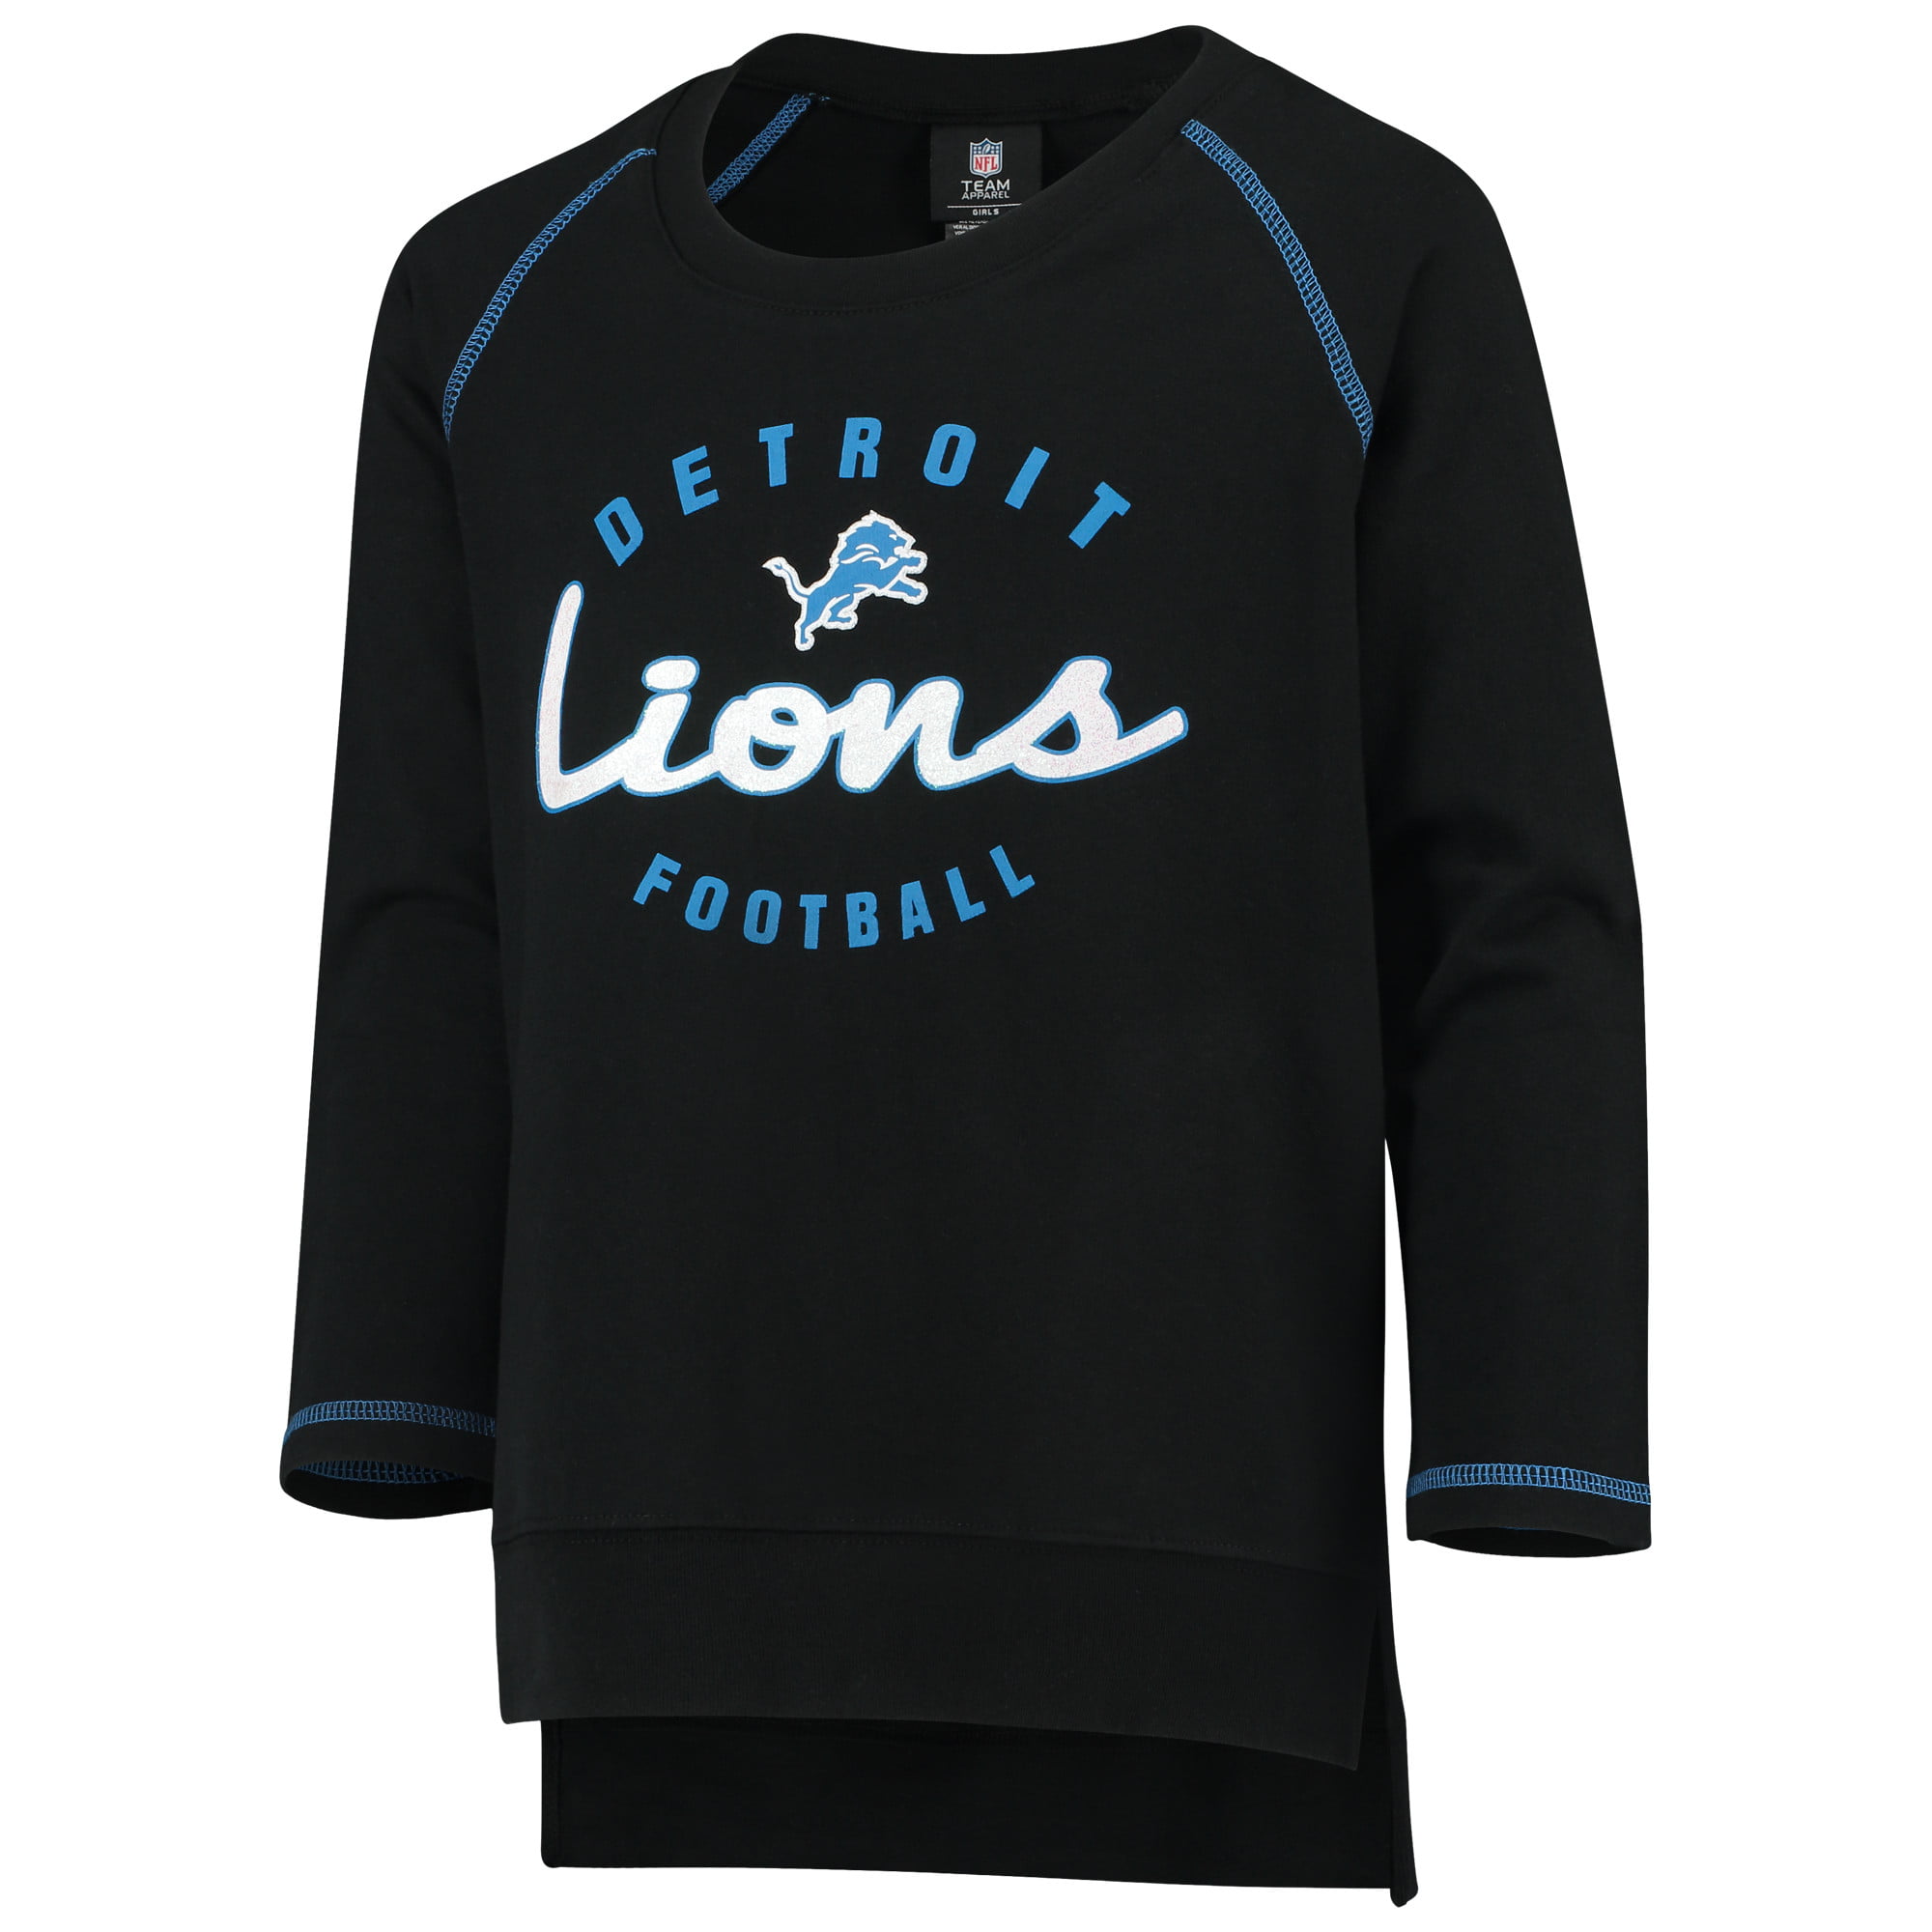 detroit lions crew sweatshirt